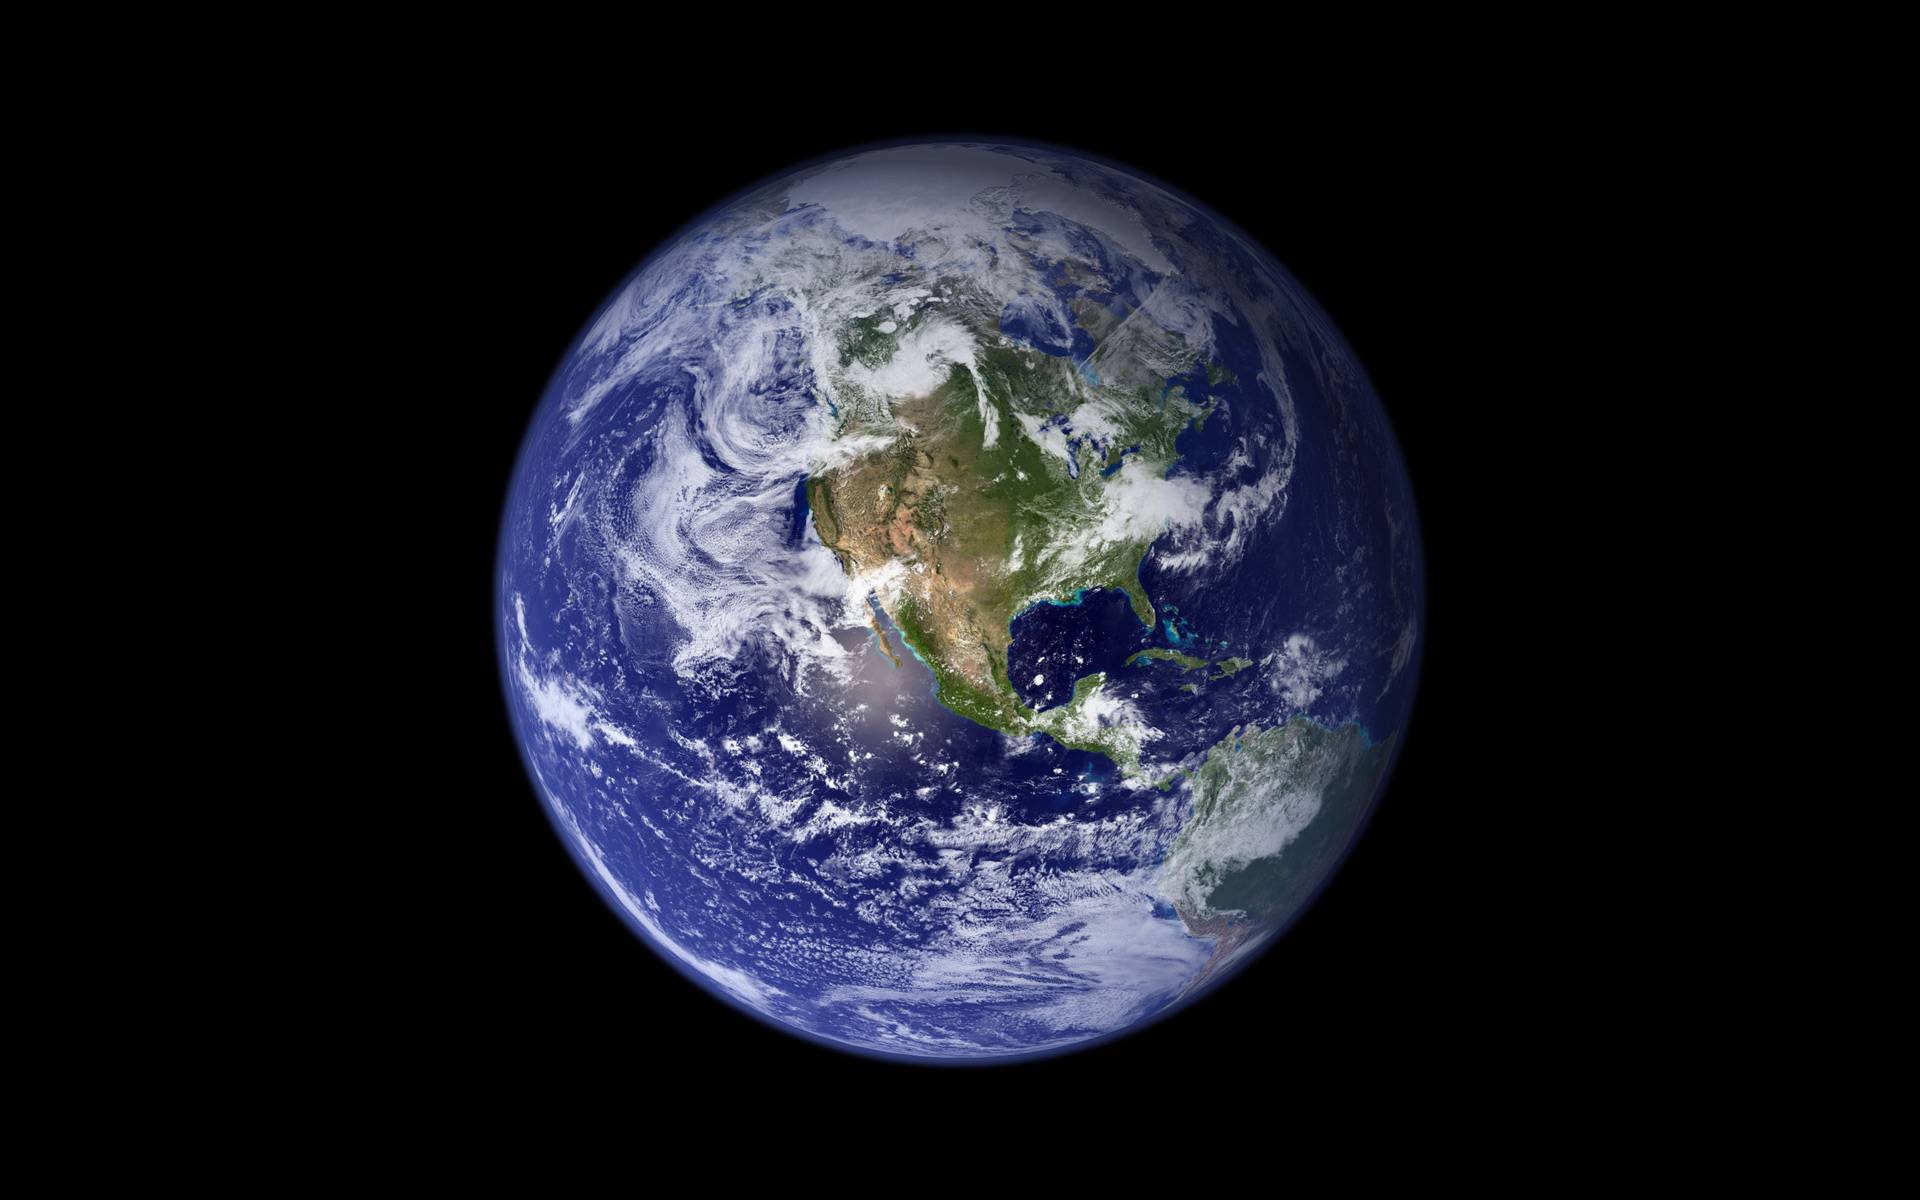 fond d'écran google earth,terre,planète,objet astronomique,monde,atmosphère